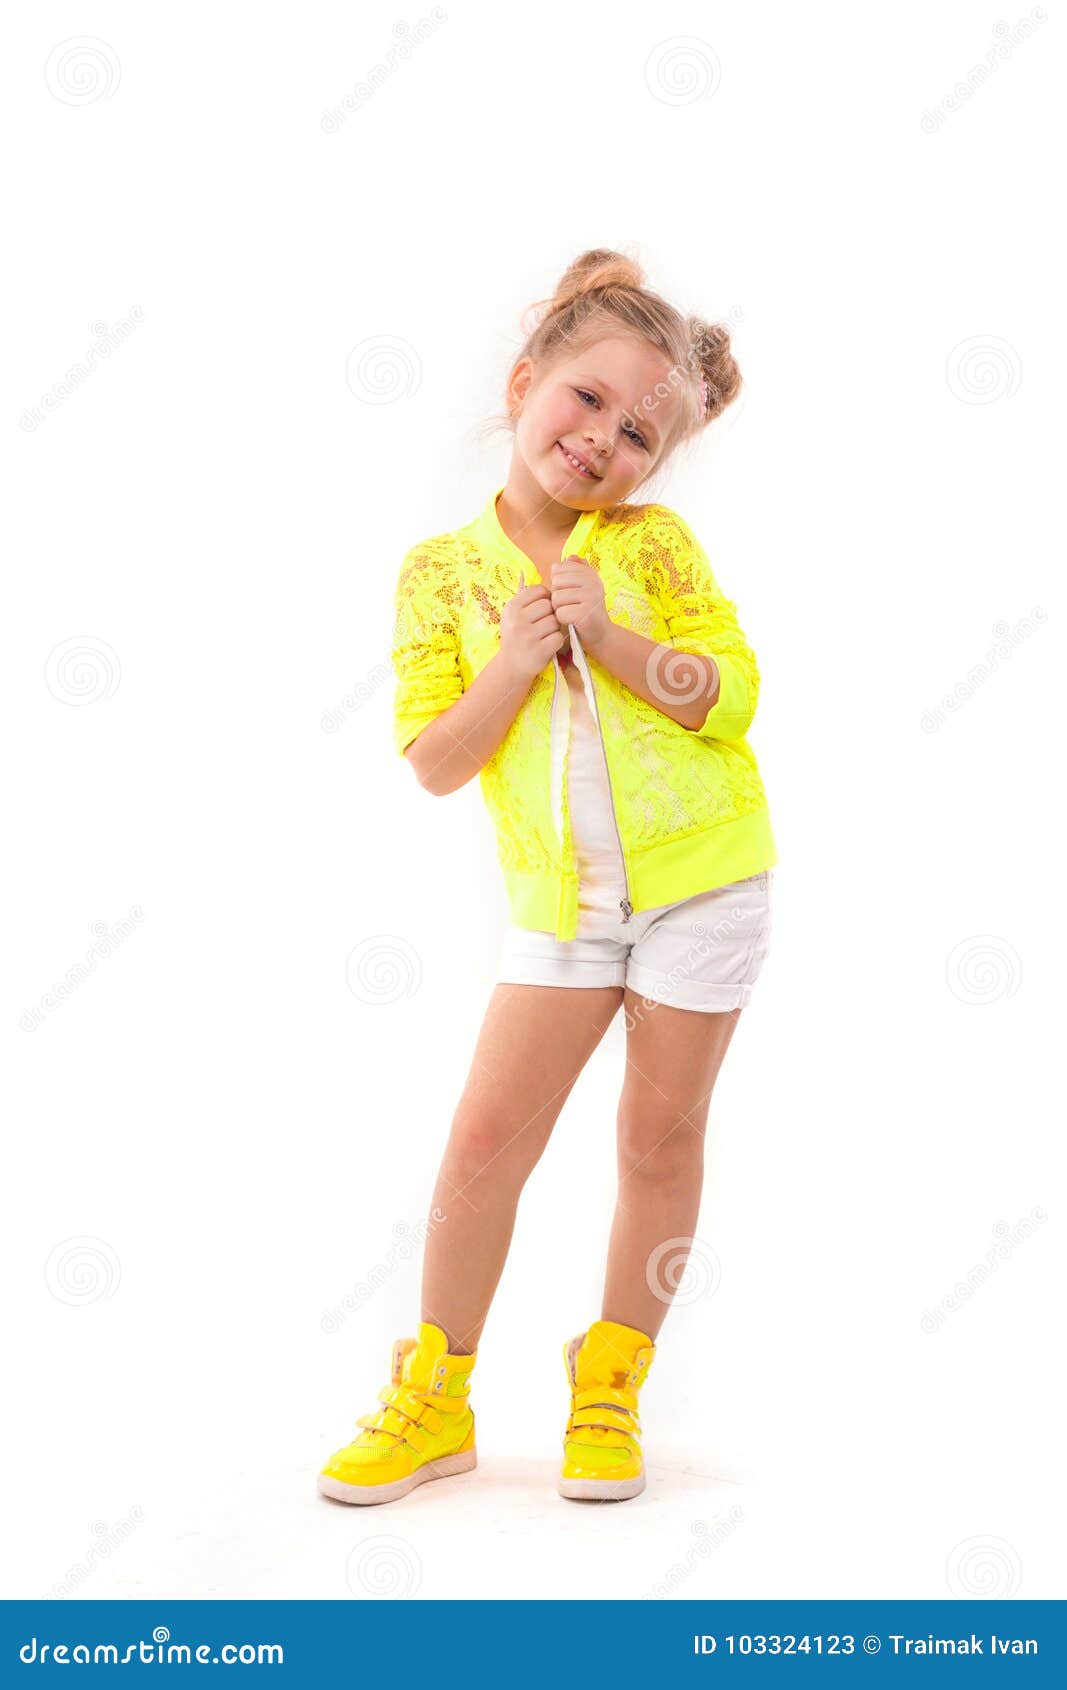 Niña Bonita En Camisa Amarilla, Los Pantalones Cortos Blancos Y Las Botas  Amarillas Imagen de archivo - Imagen de retrato, estilo: 103324123